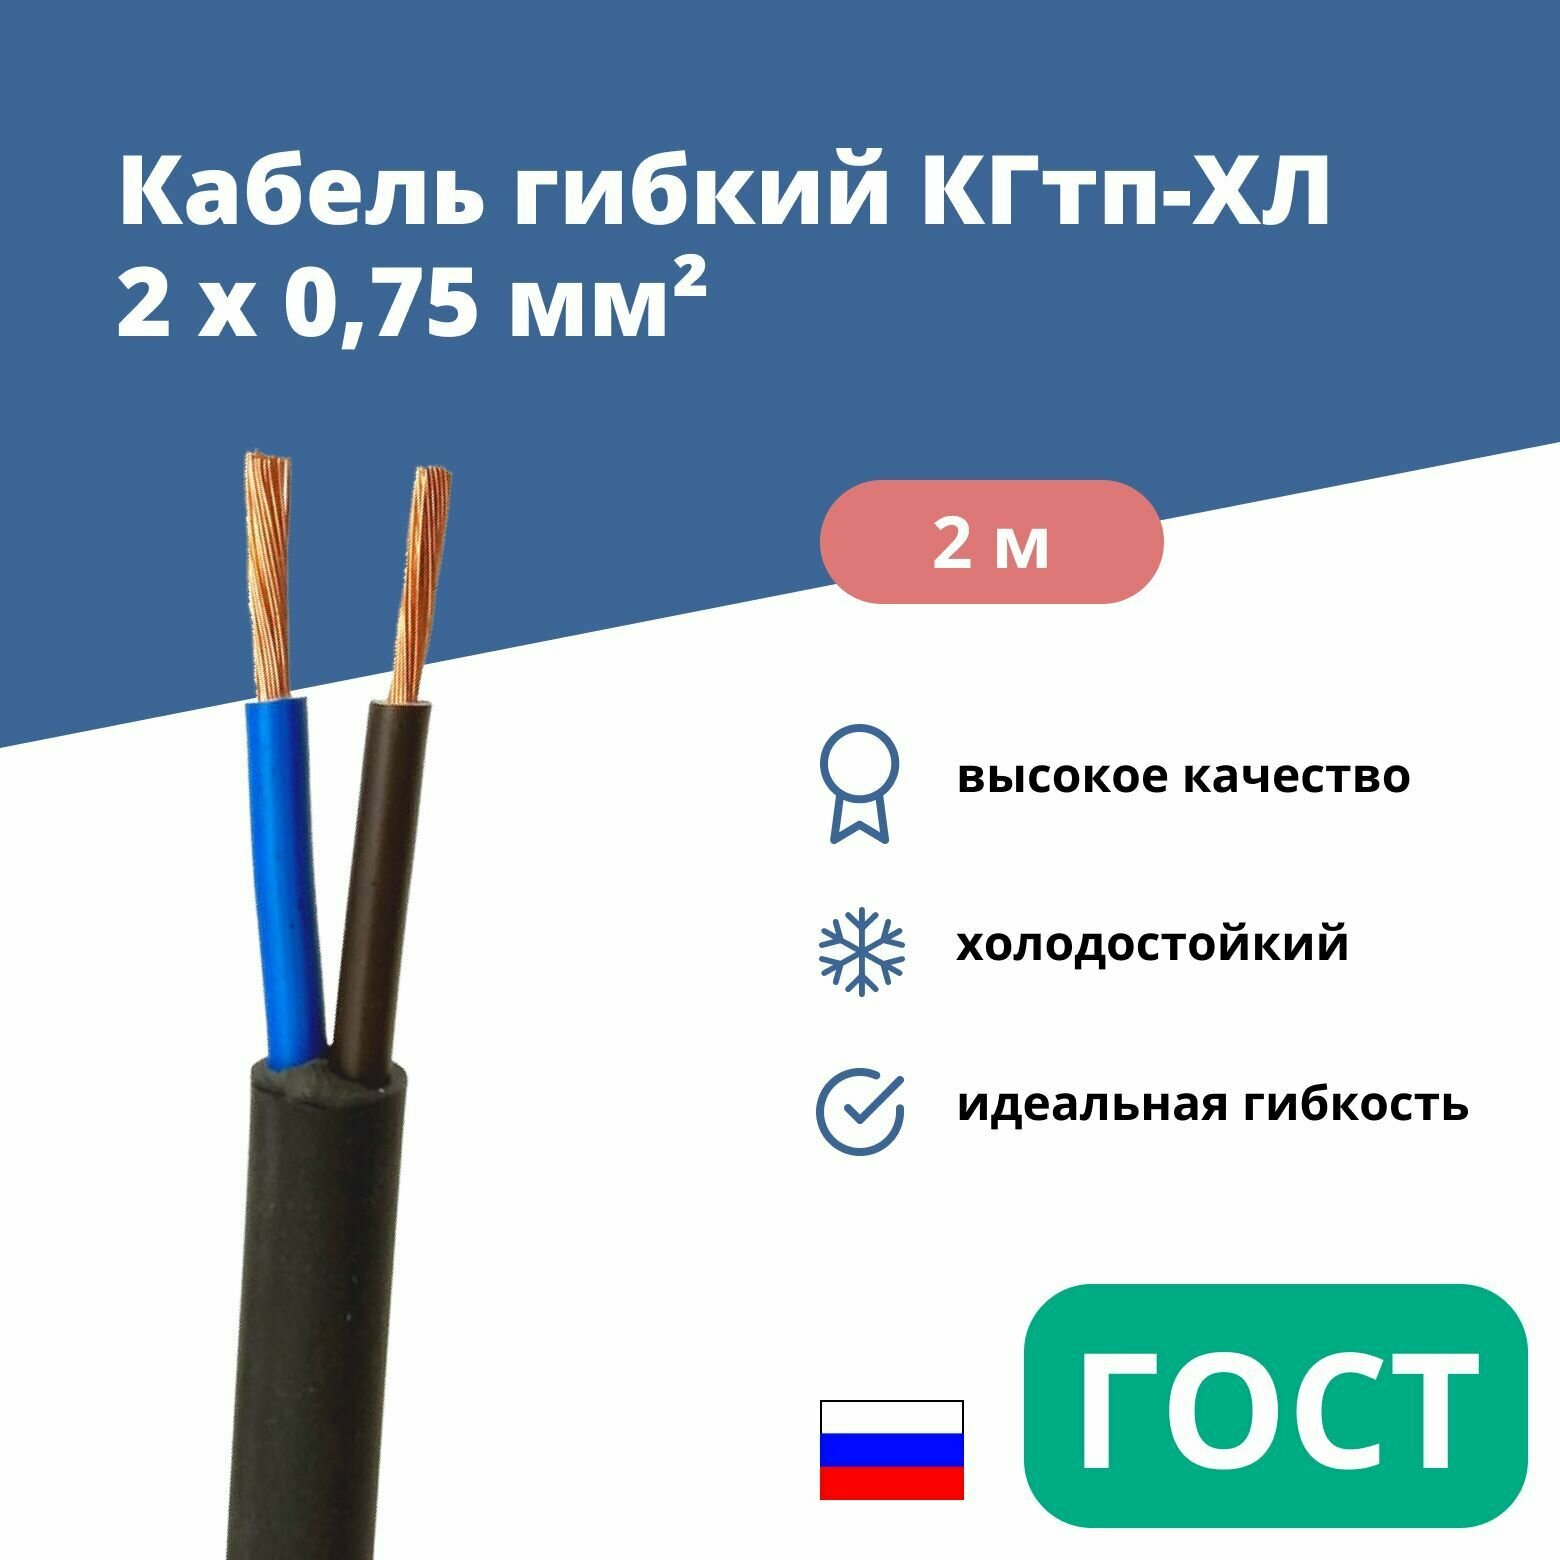 Силовой сварочный кабель гибкий кгтп-хл 2х0,75 уп. 2м.